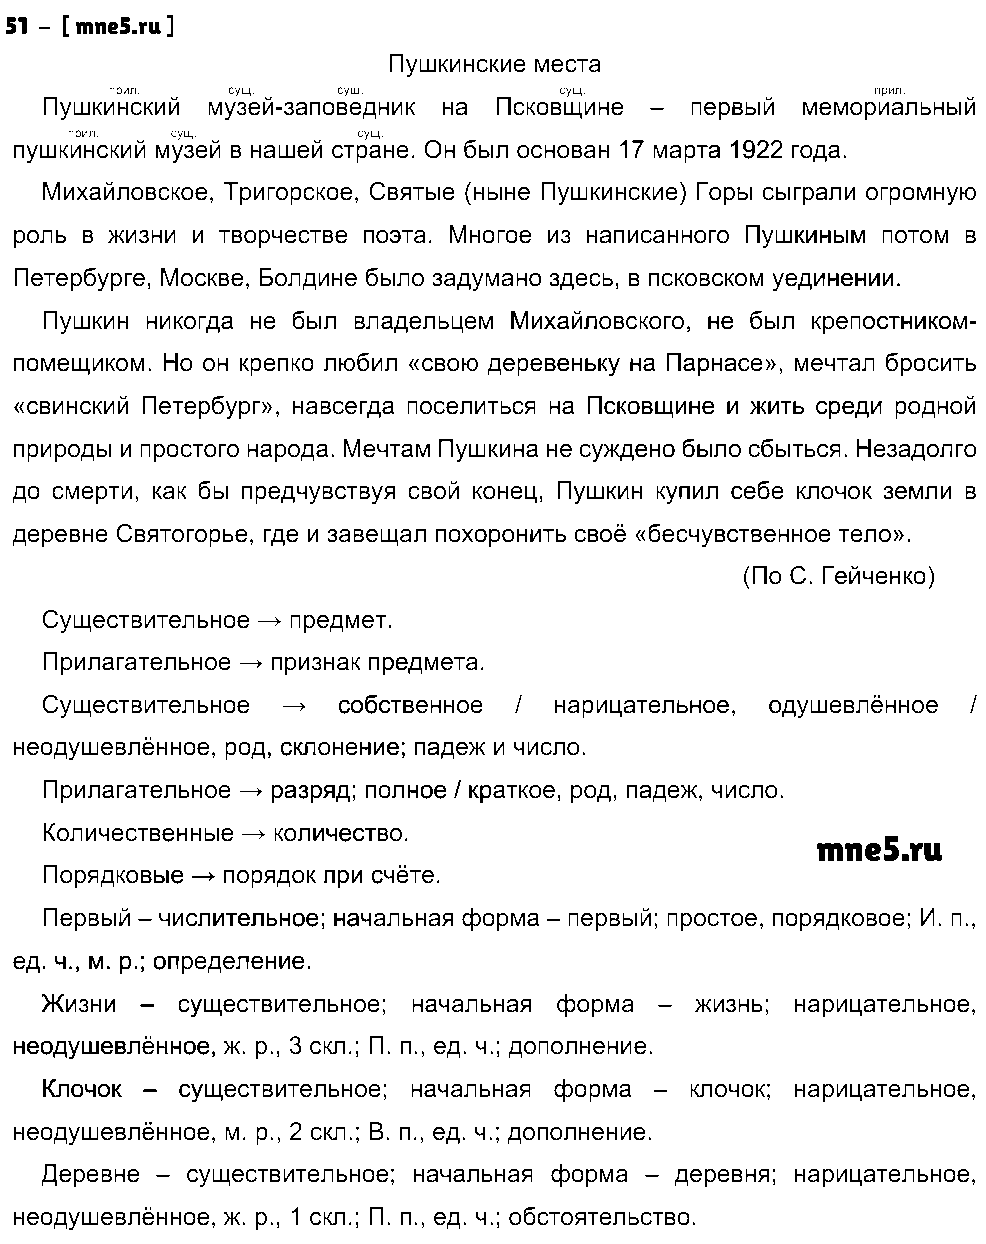 ГДЗ Русский язык 8 класс - 51